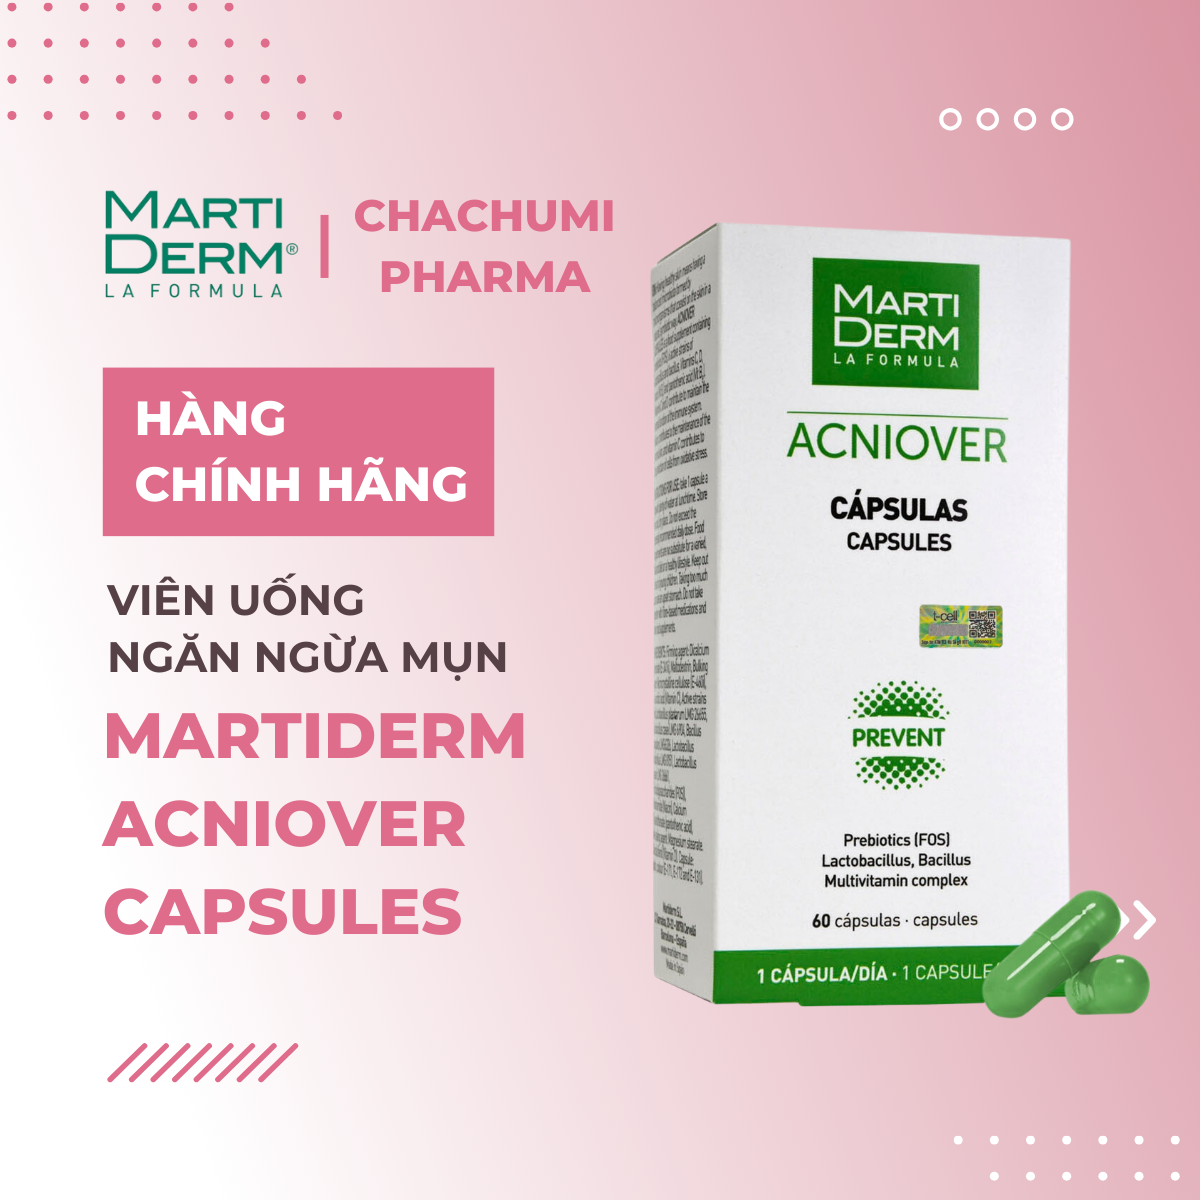 MartiDerm Acniover Capsules - Viên Uống Ngăn Ngừa Mụn (60 viên)